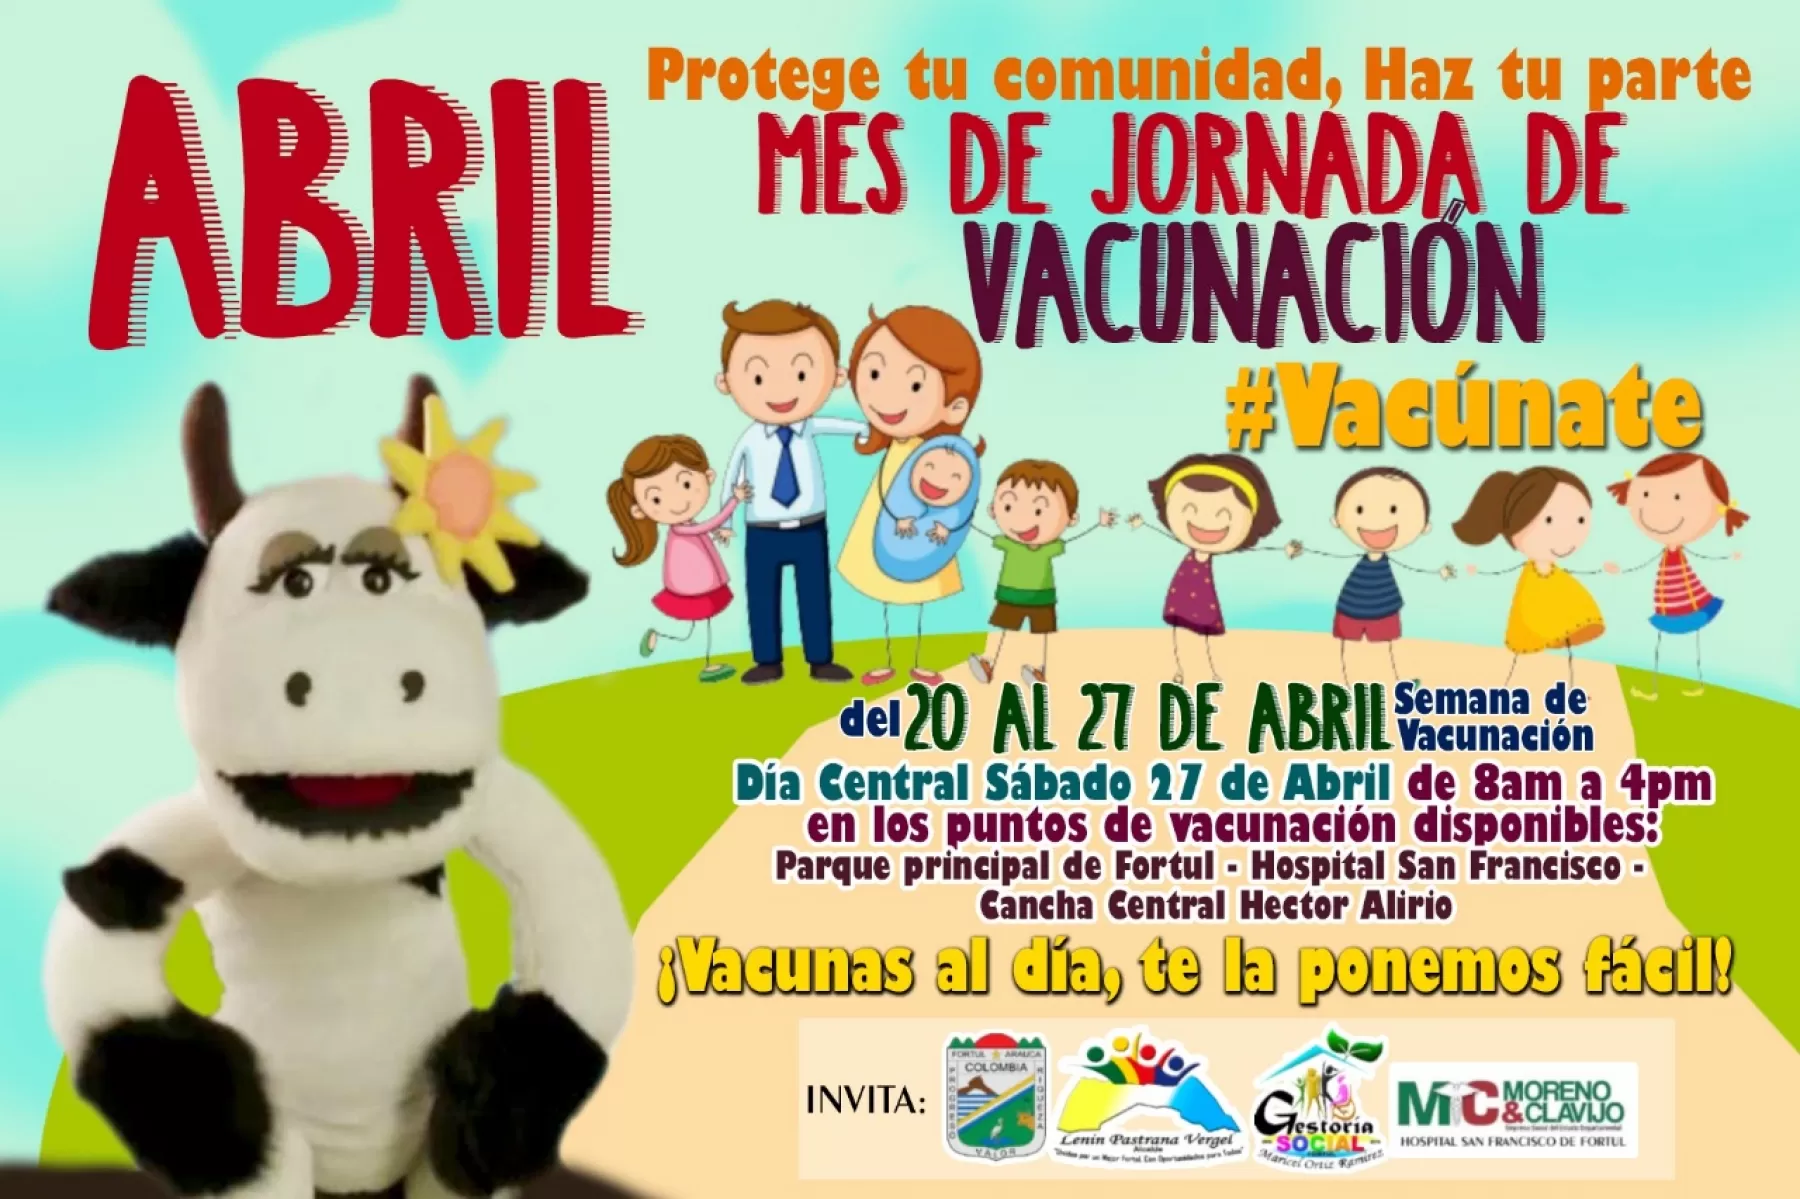 El próximo martes 23 de abril, la Unidad de Salud de Arauca, realiza el lanzamiento de la jornada de vacunación de las Américas.